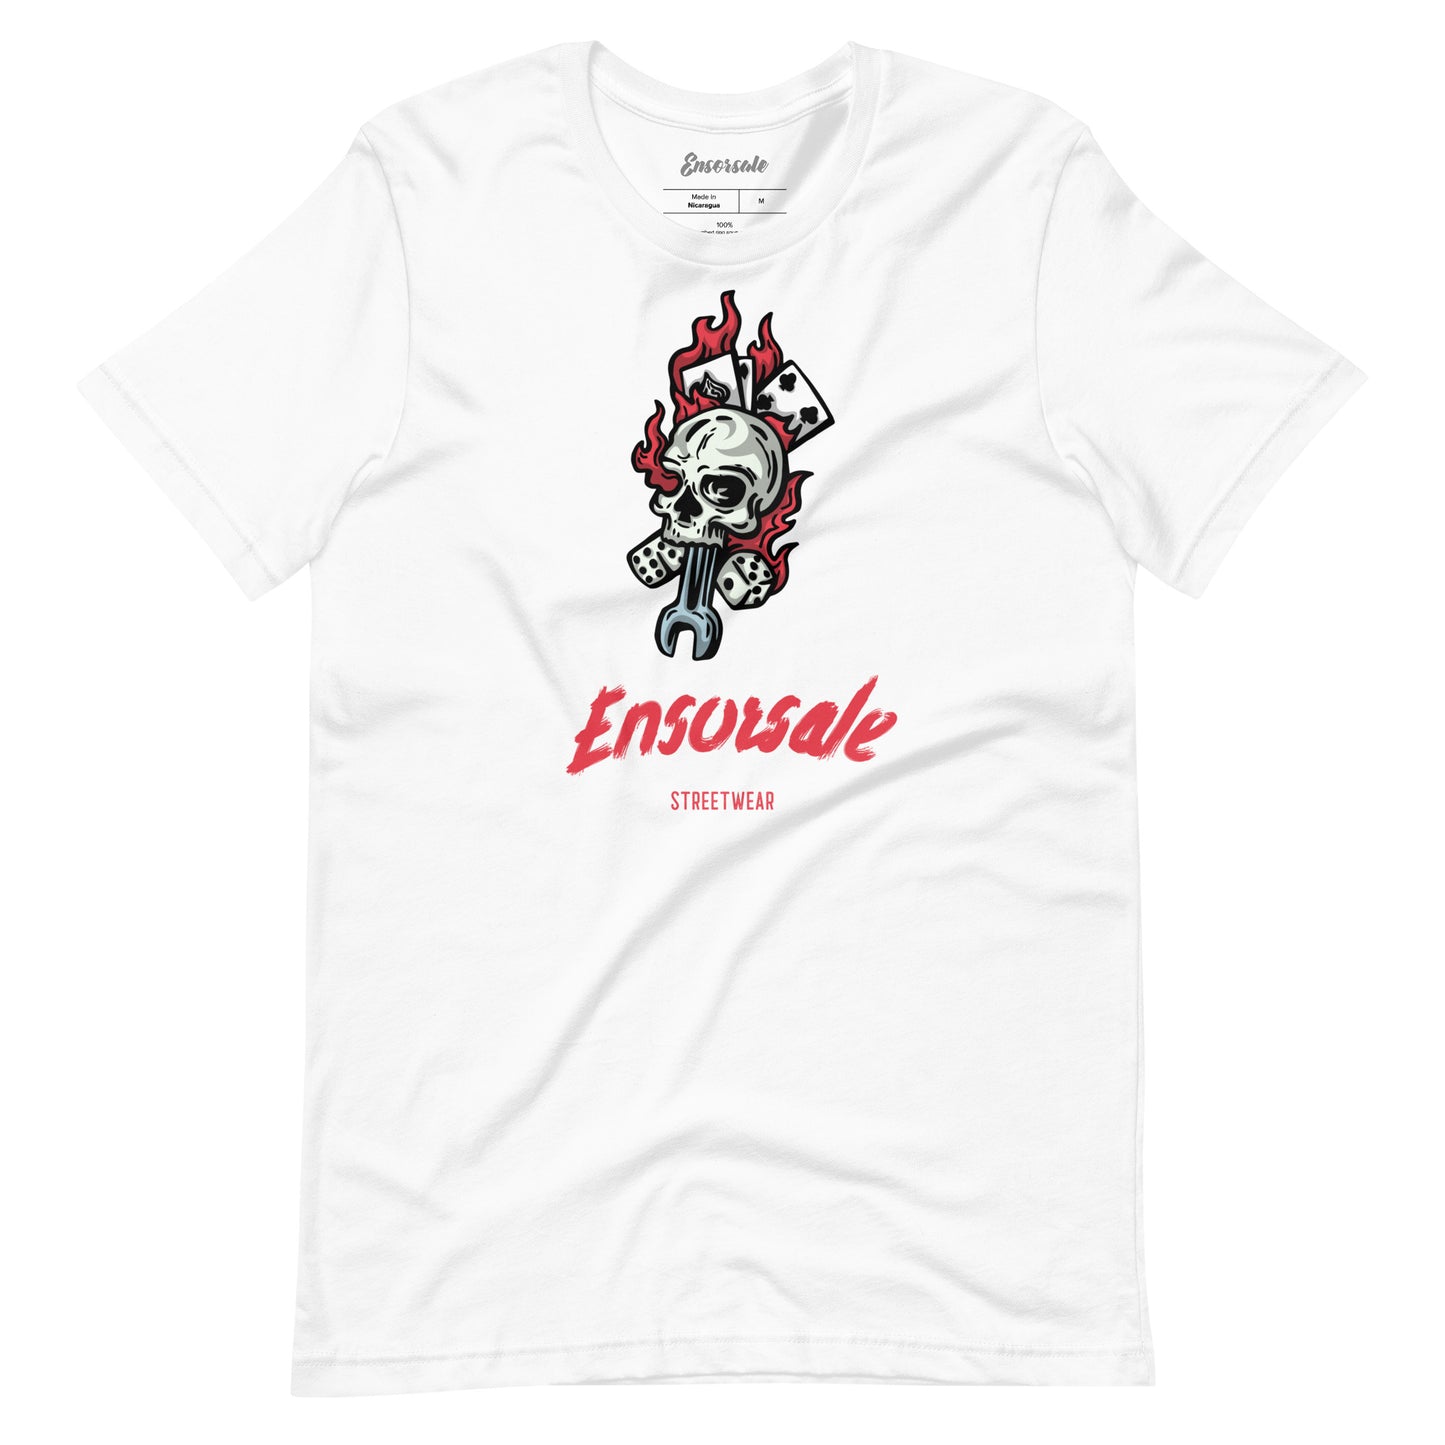 Ensorsale Streetwear T-Shirt